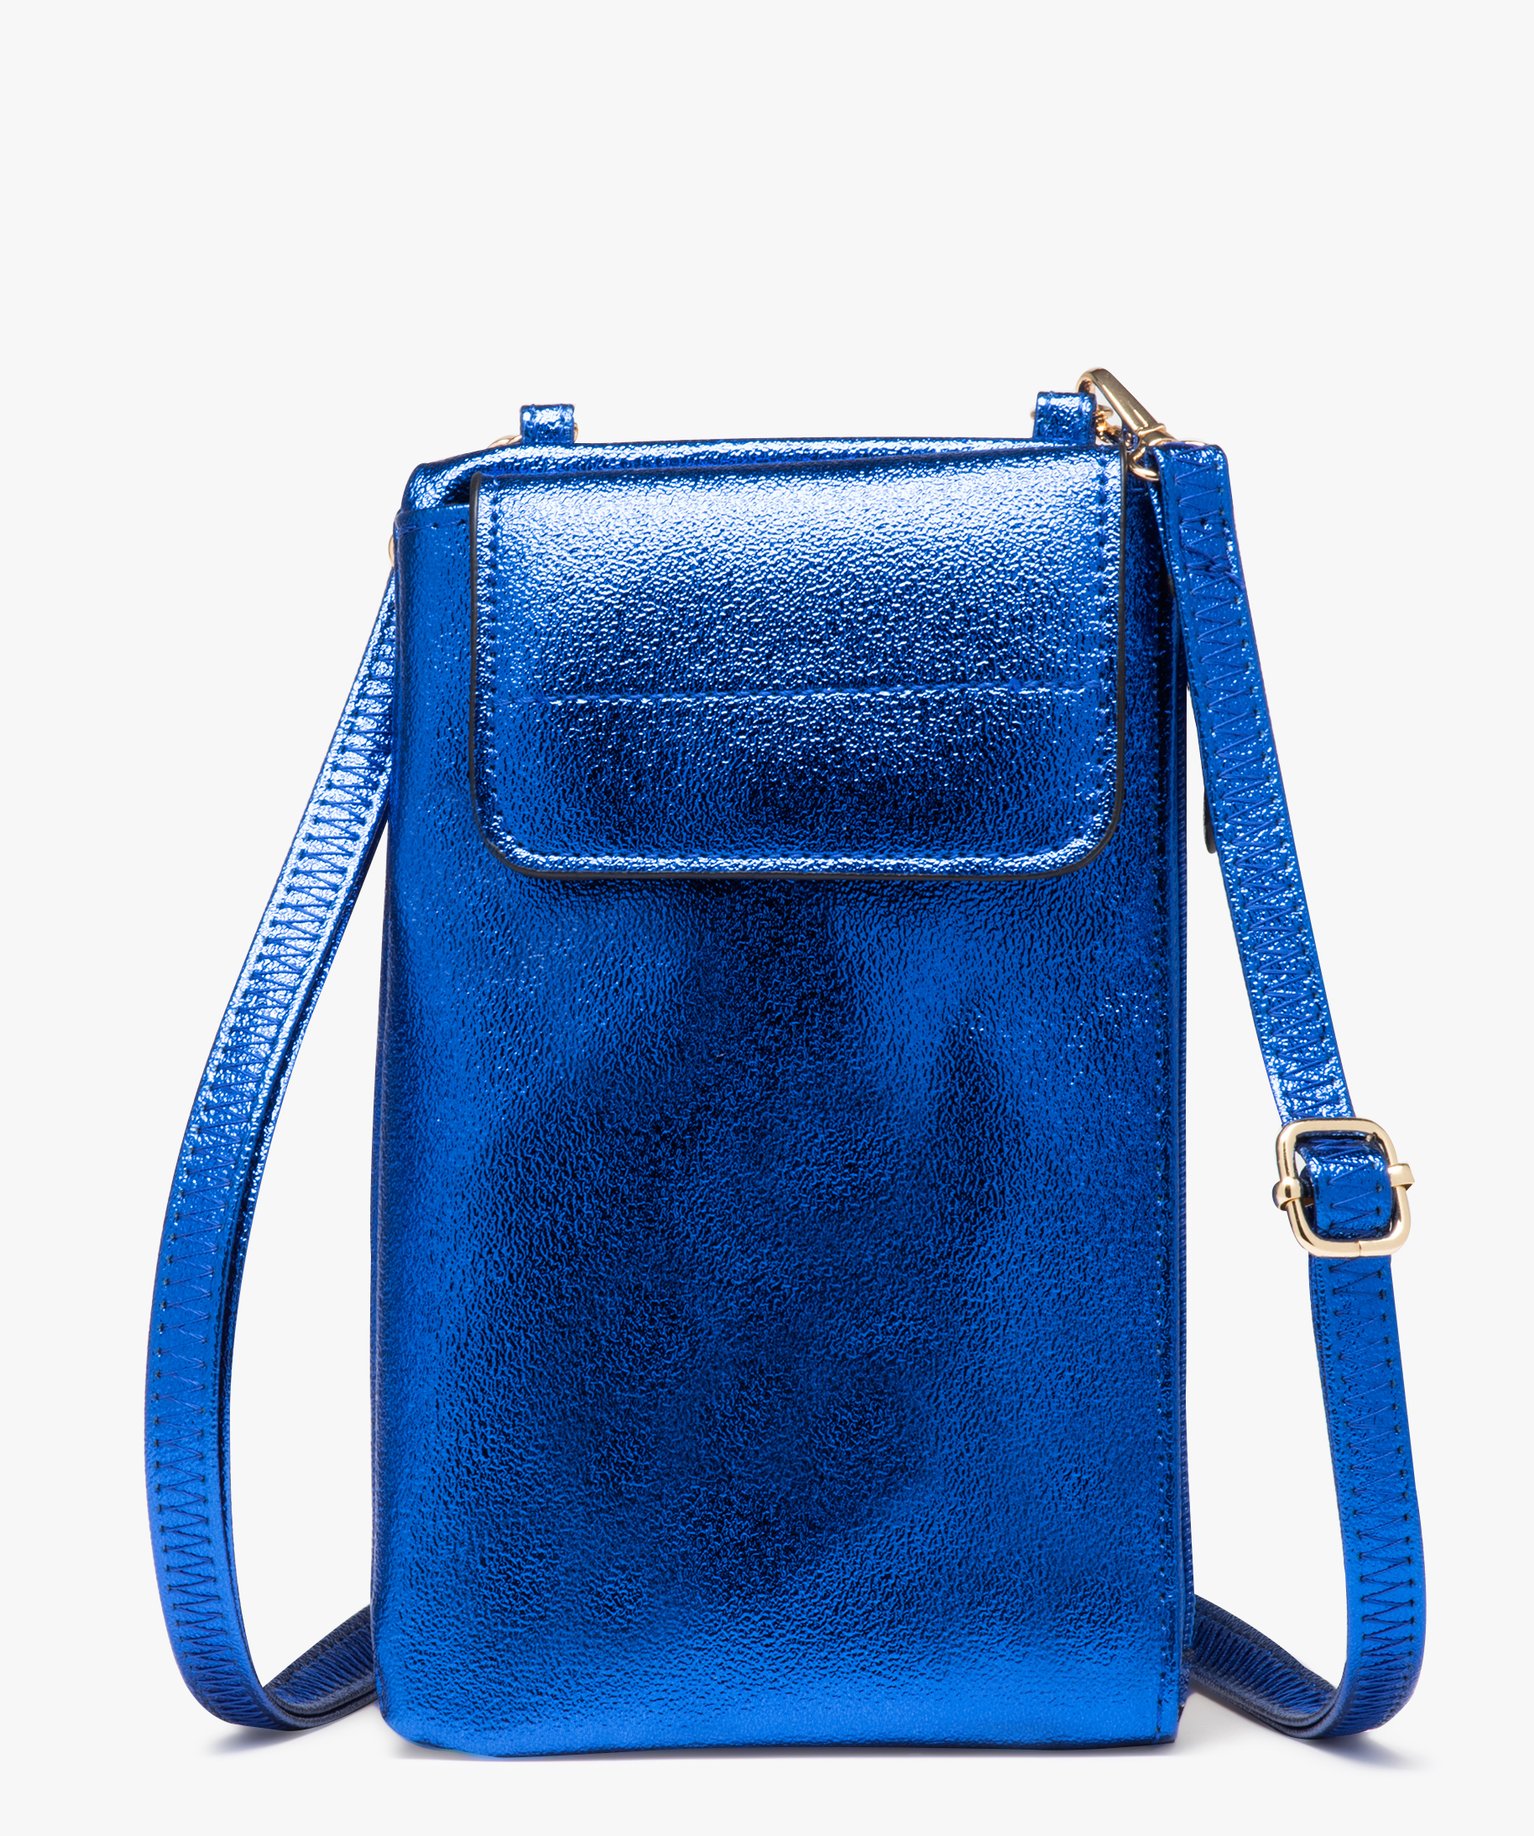 pochette femme zippee et metallisee a bandouliere amovible bleu porte-monnaie et portefeuilles